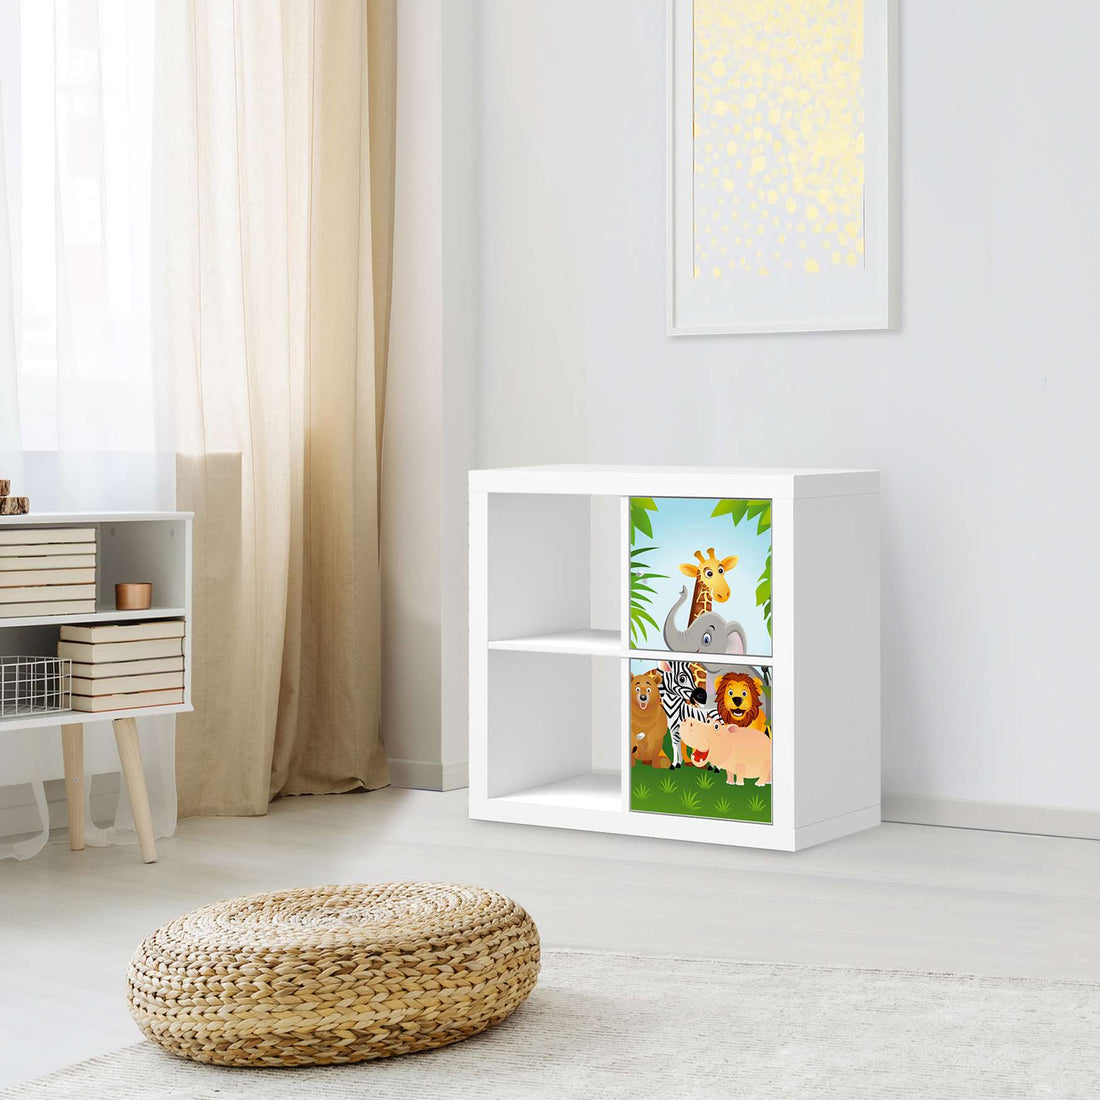 Klebefolie für Möbel Wild Animals - IKEA Expedit Regal 2 Türen Hoch - Kinderzimmer